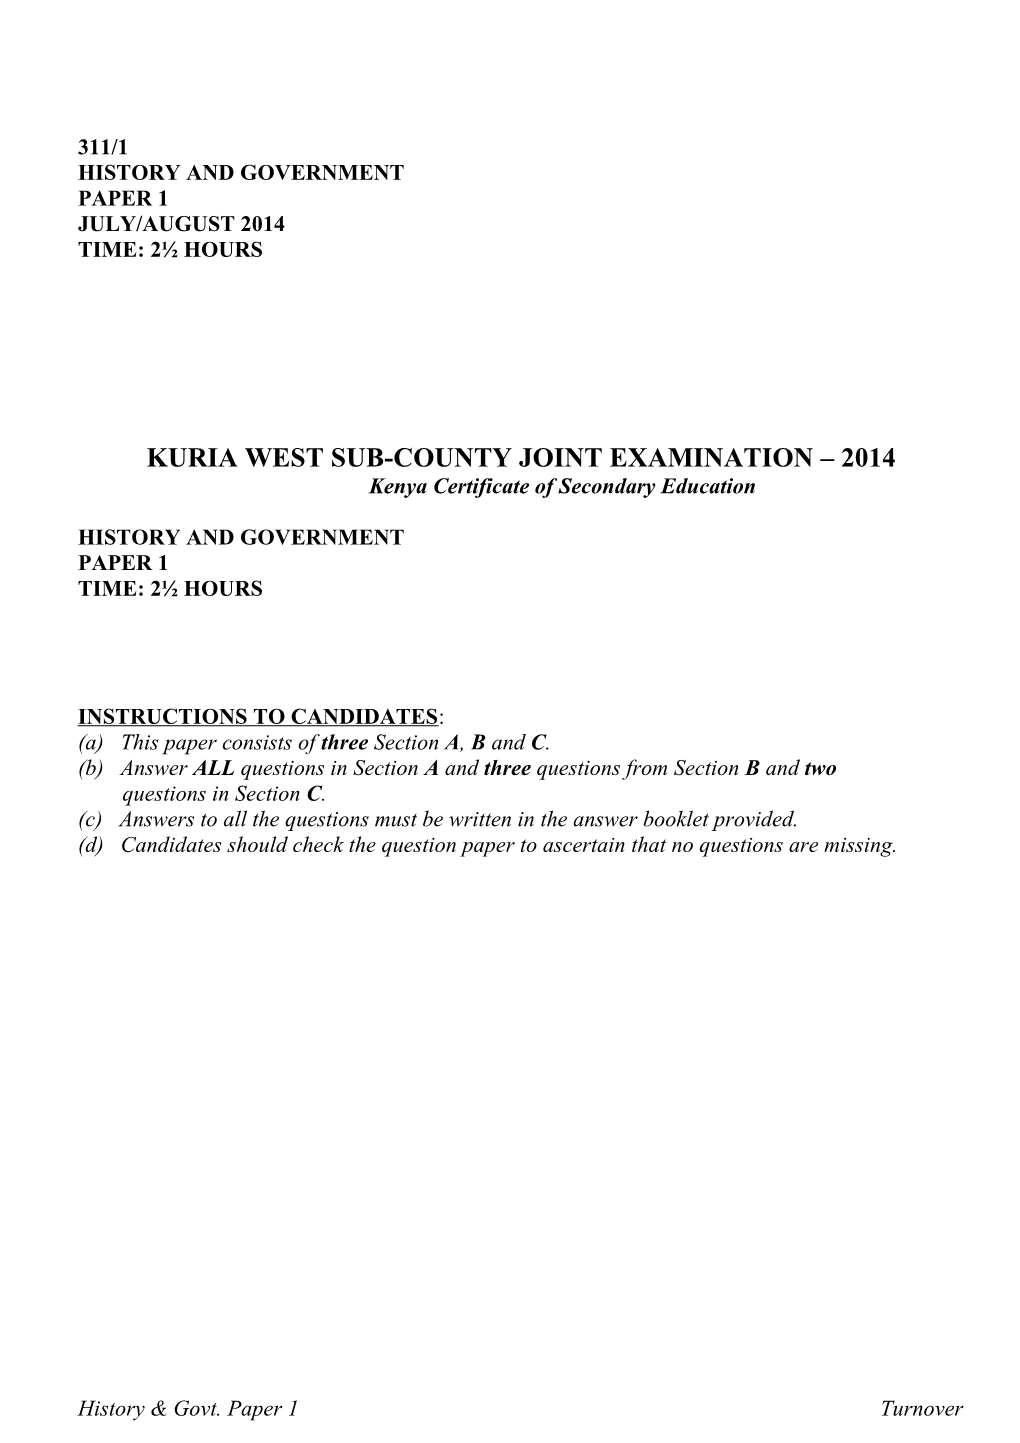 Kuria West Sub-County Joint Examination 2014